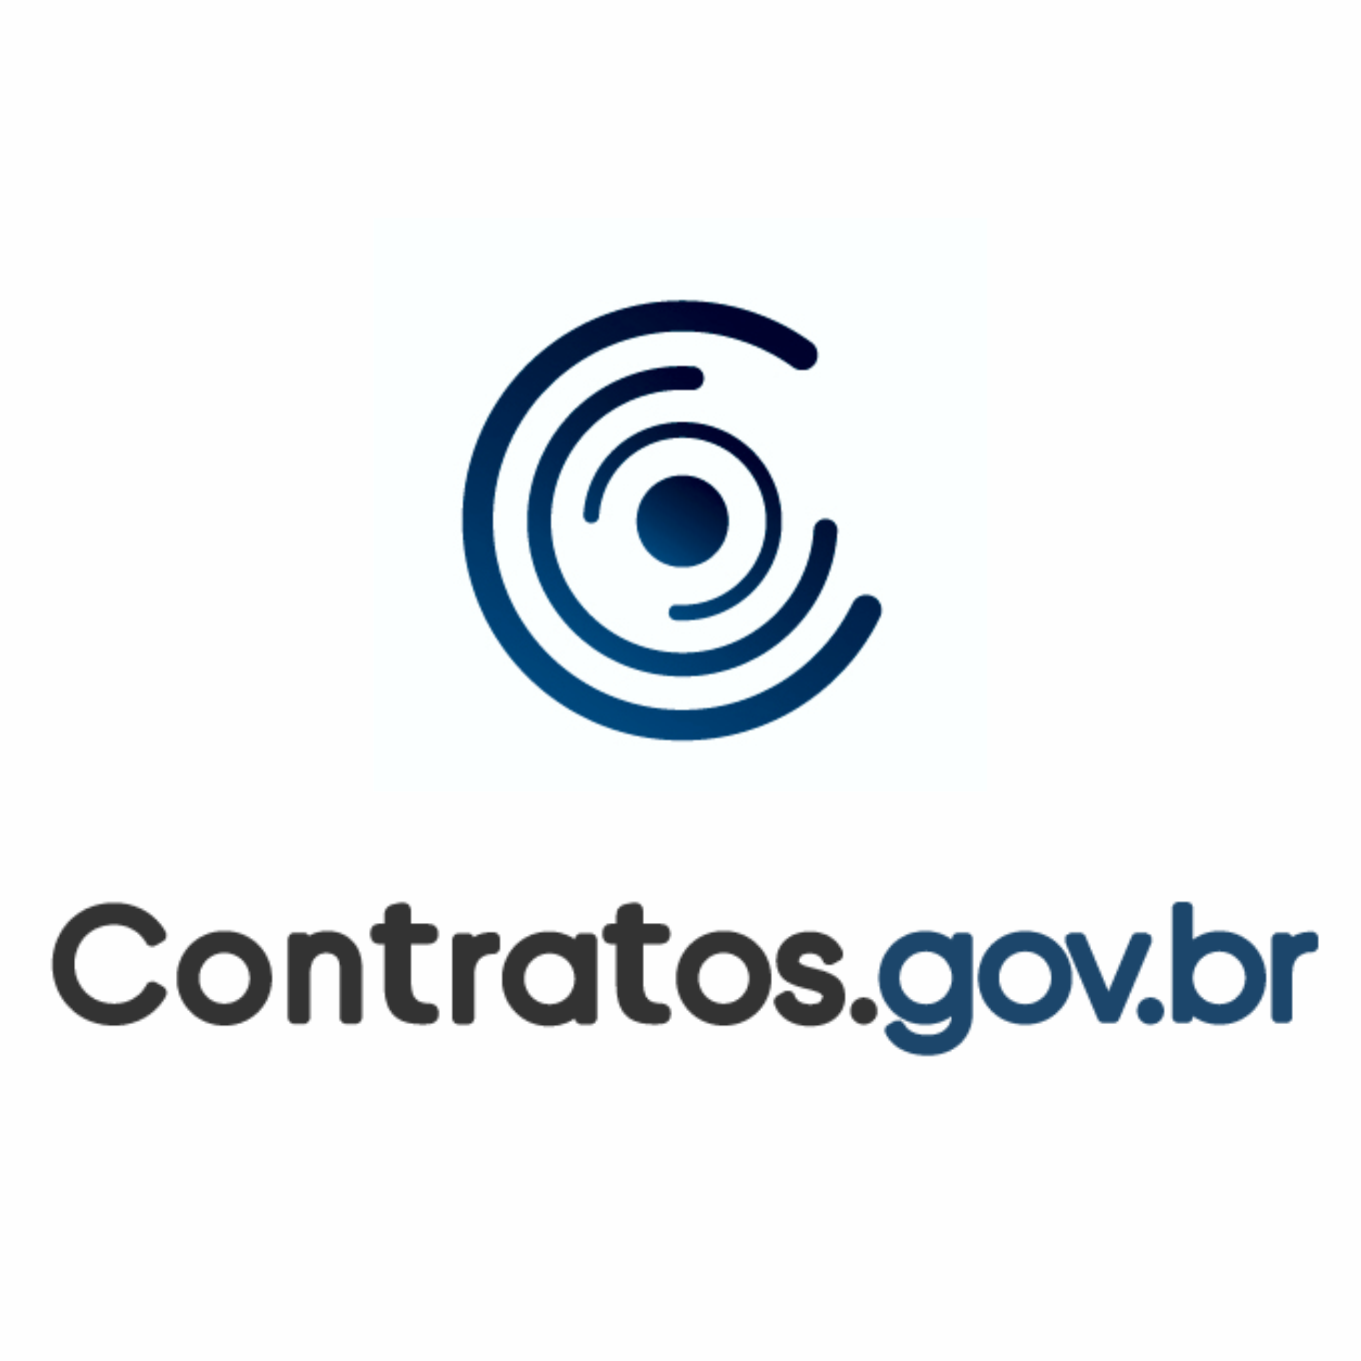 Treinamento Contratos.gov.br - CNJ